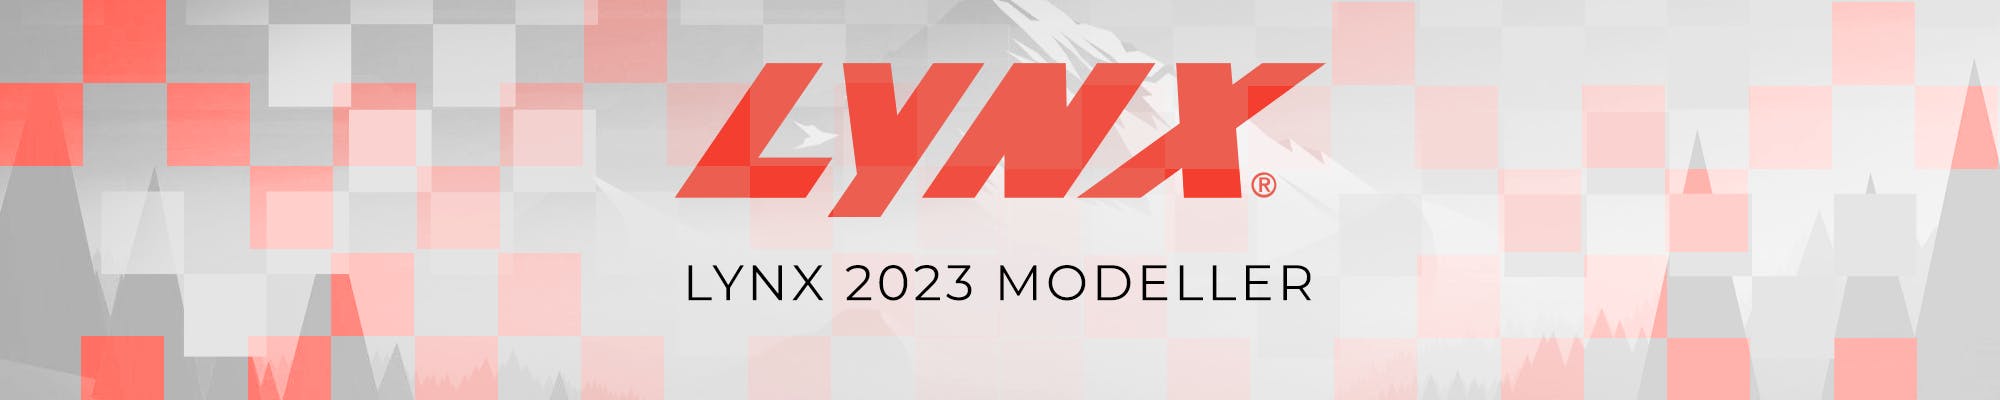 Lynx 2023 Modeller